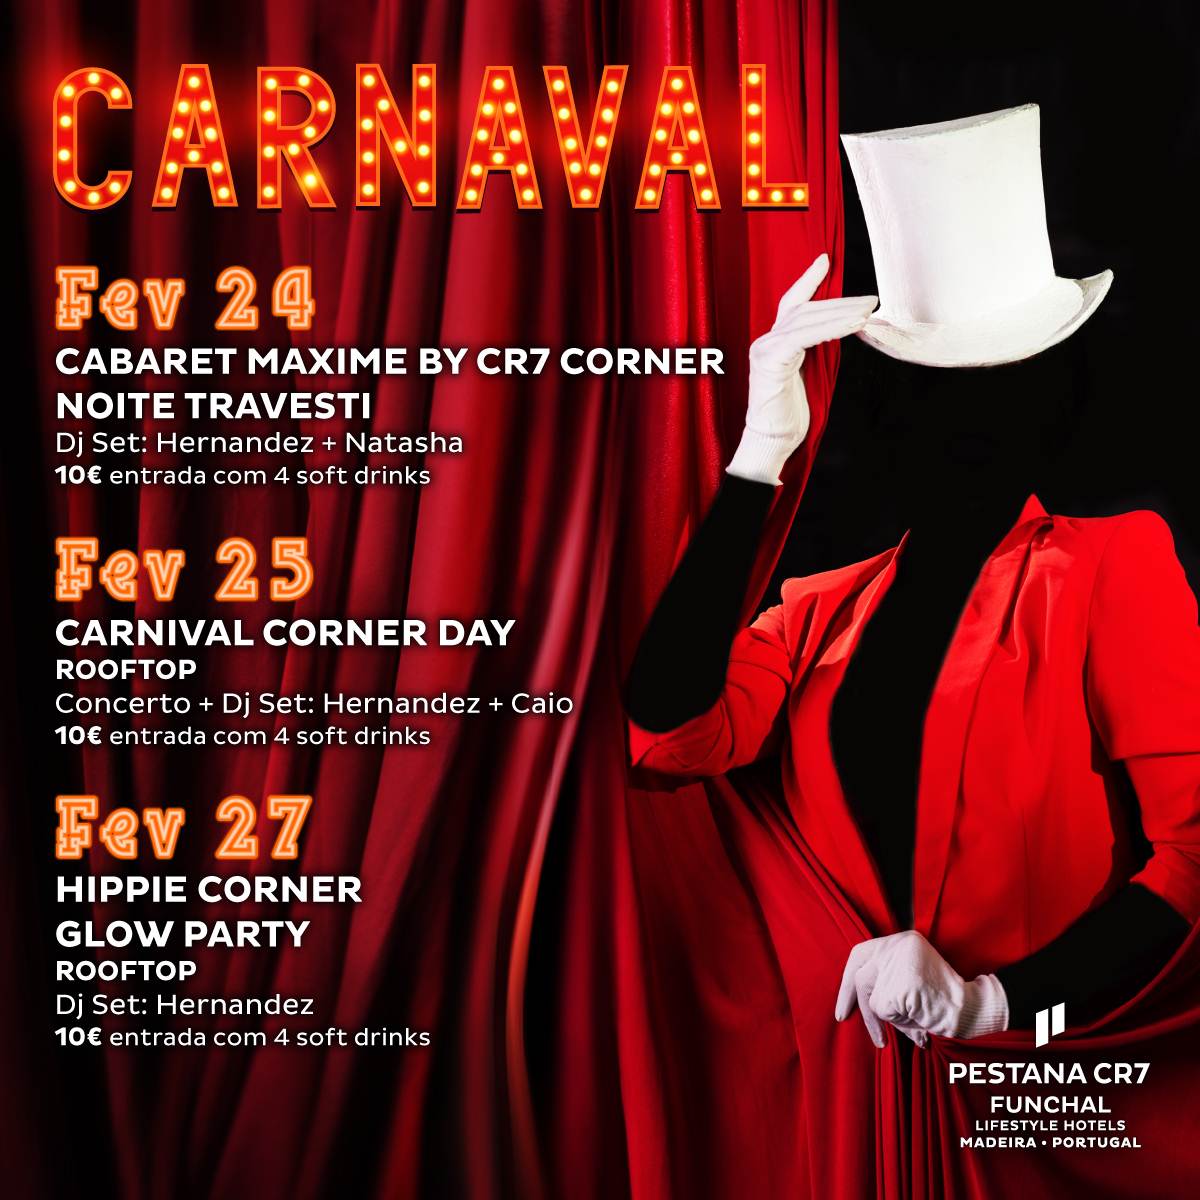 3 Festas de Carnaval do Hotel Pestana CR7 Funchal